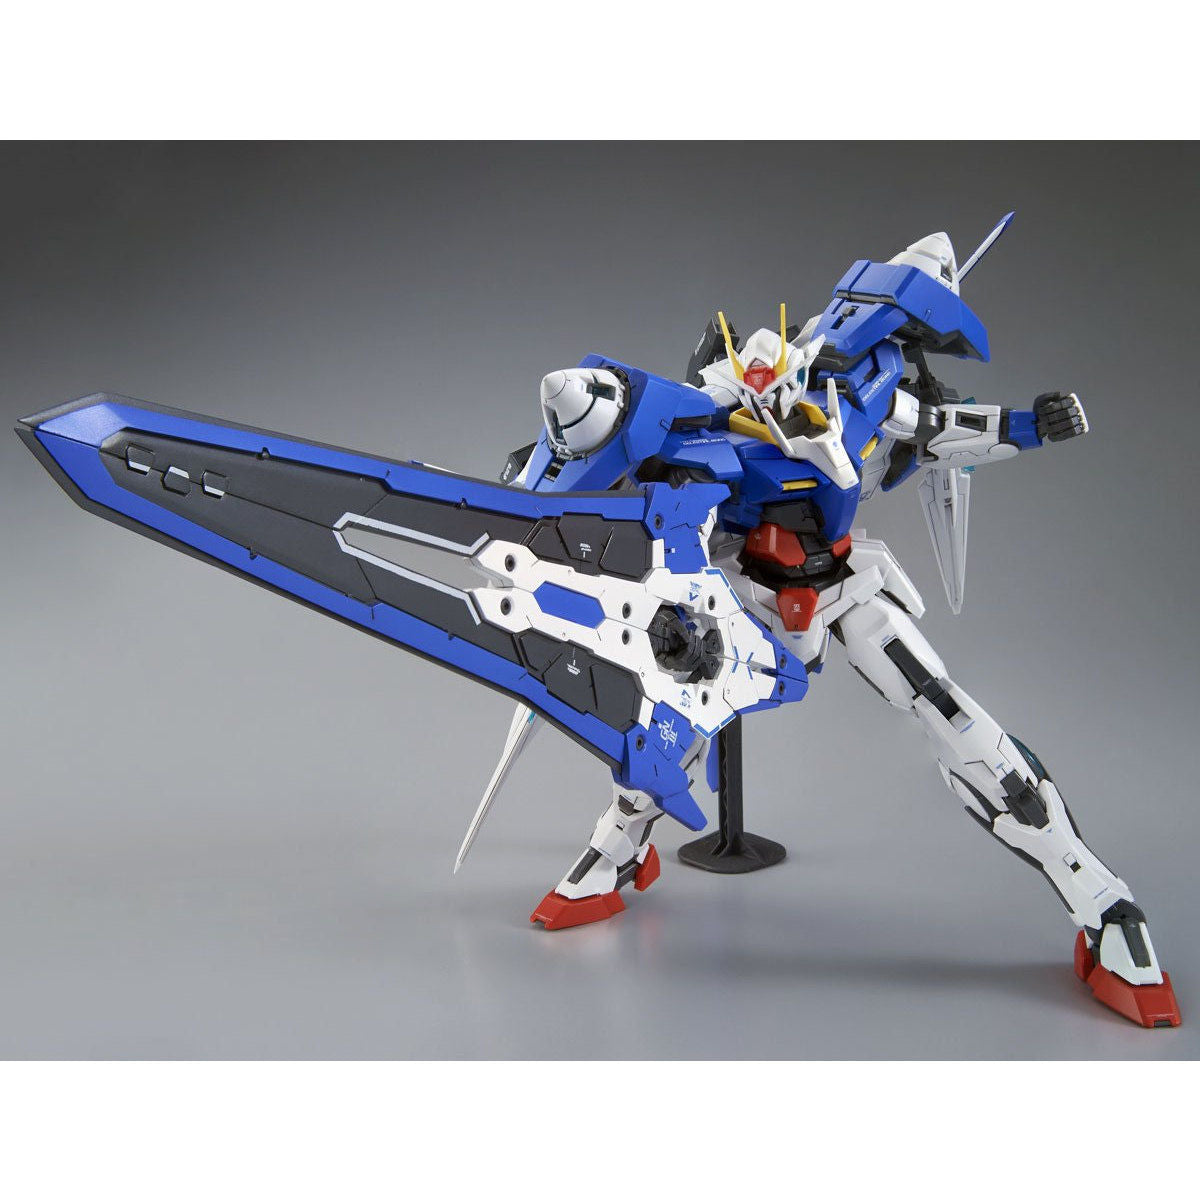 MG 1/100 Gundam 00 XN Raiser - Glacier Hobbies - Bandai